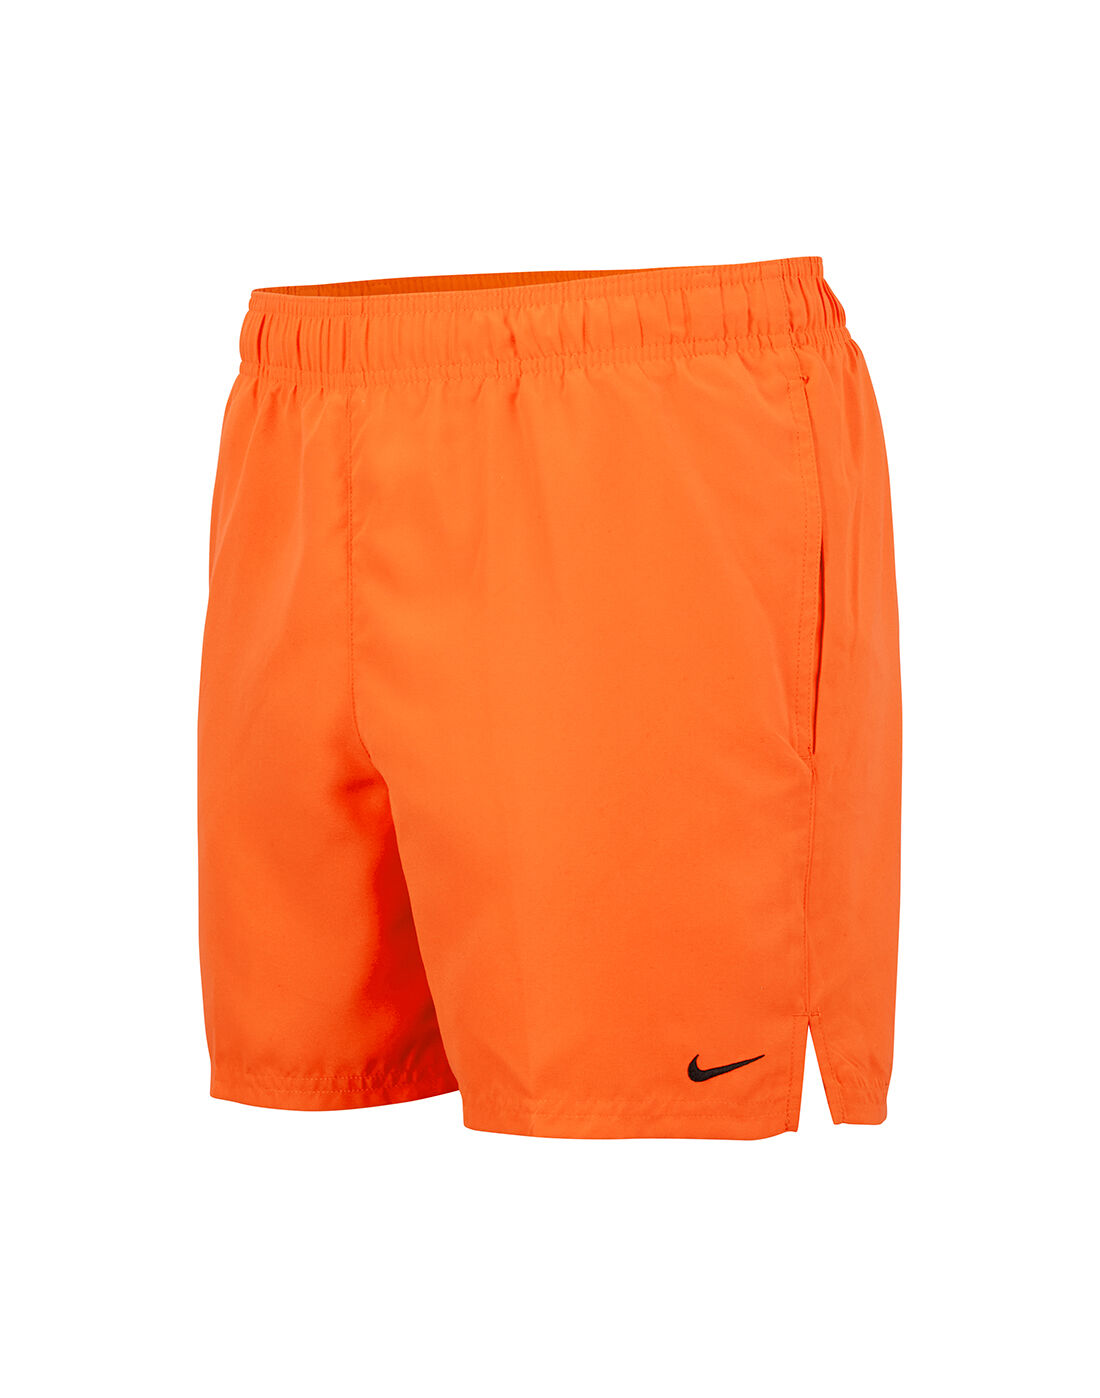 nike mens shorts orange